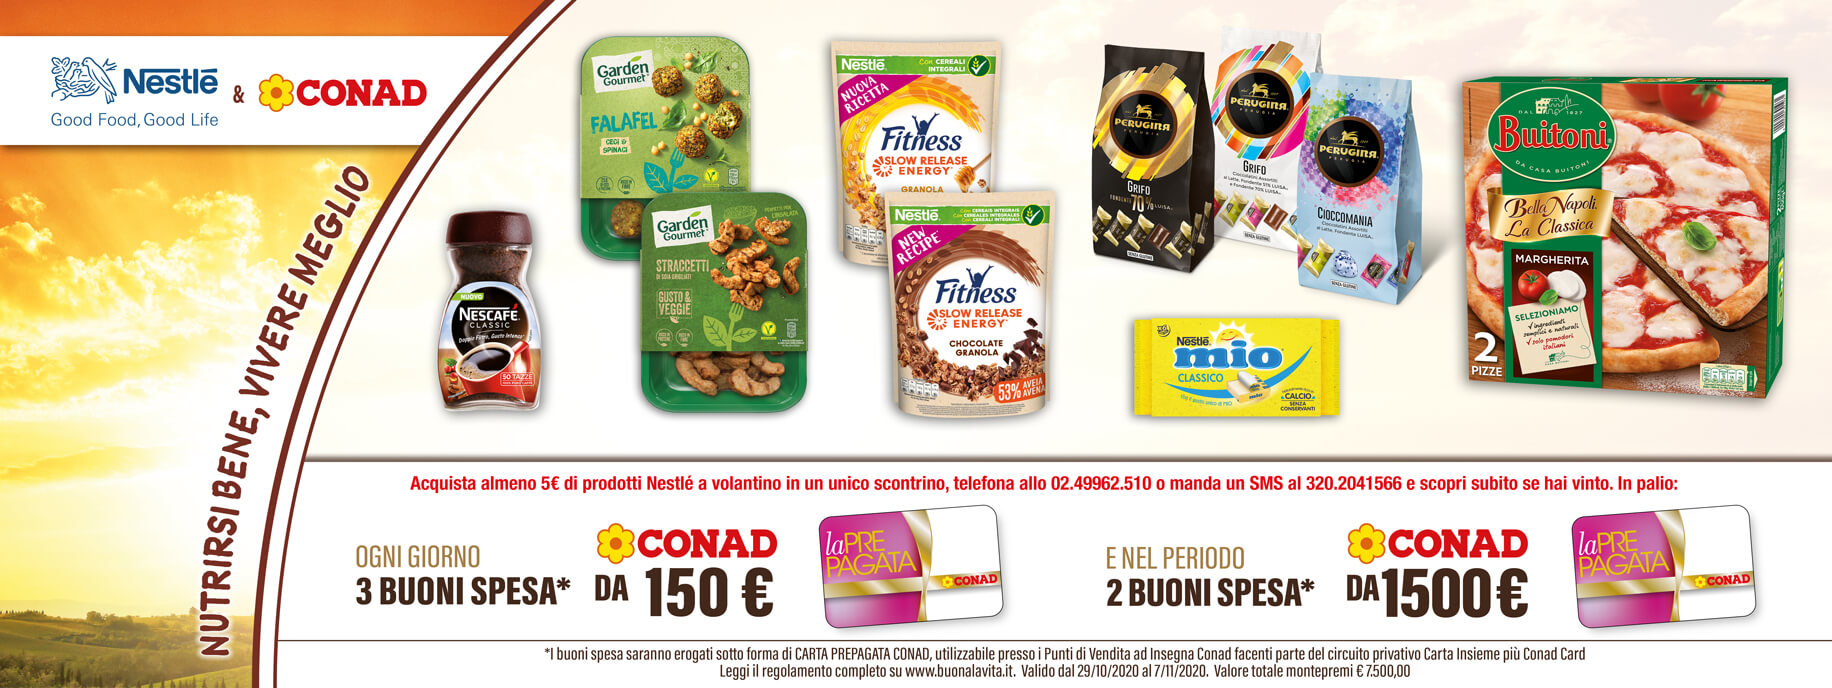 Indicazioni Concorso Nestlé Conad confezioni prodotti e buoni da 150 € e 1500 €